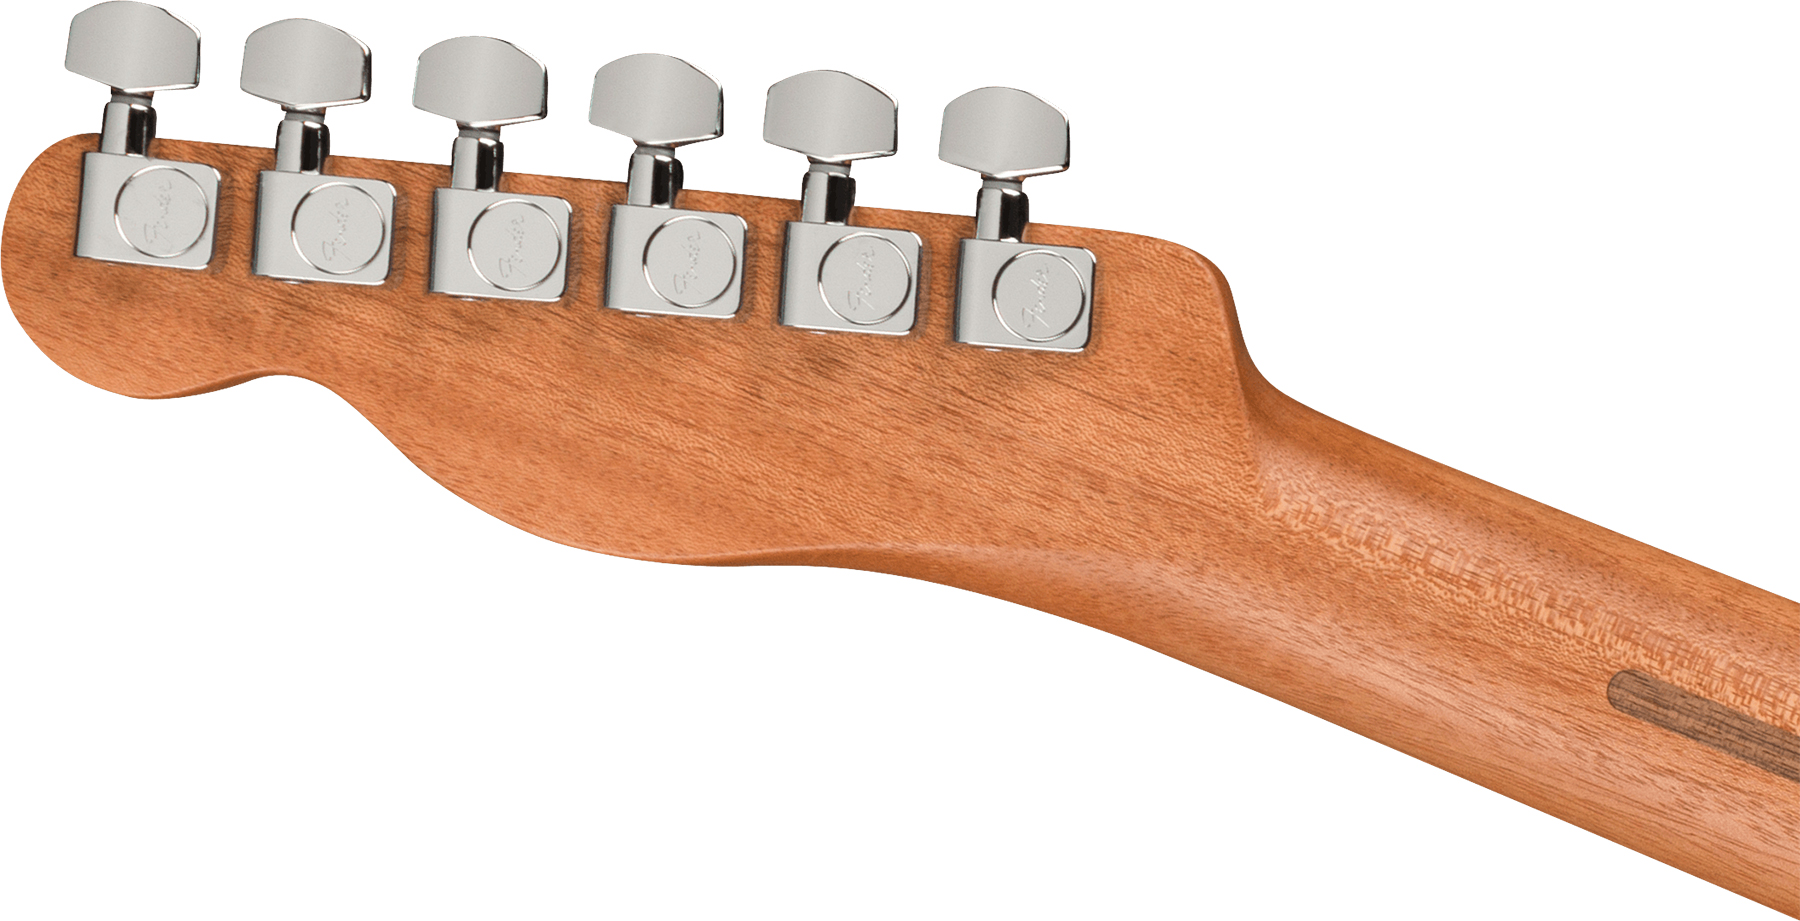 Fender Acoustasonic Tele Player Mex Epicea Acajou Rw - Shadow Burst - Electro acoustic guitar - Variation 3